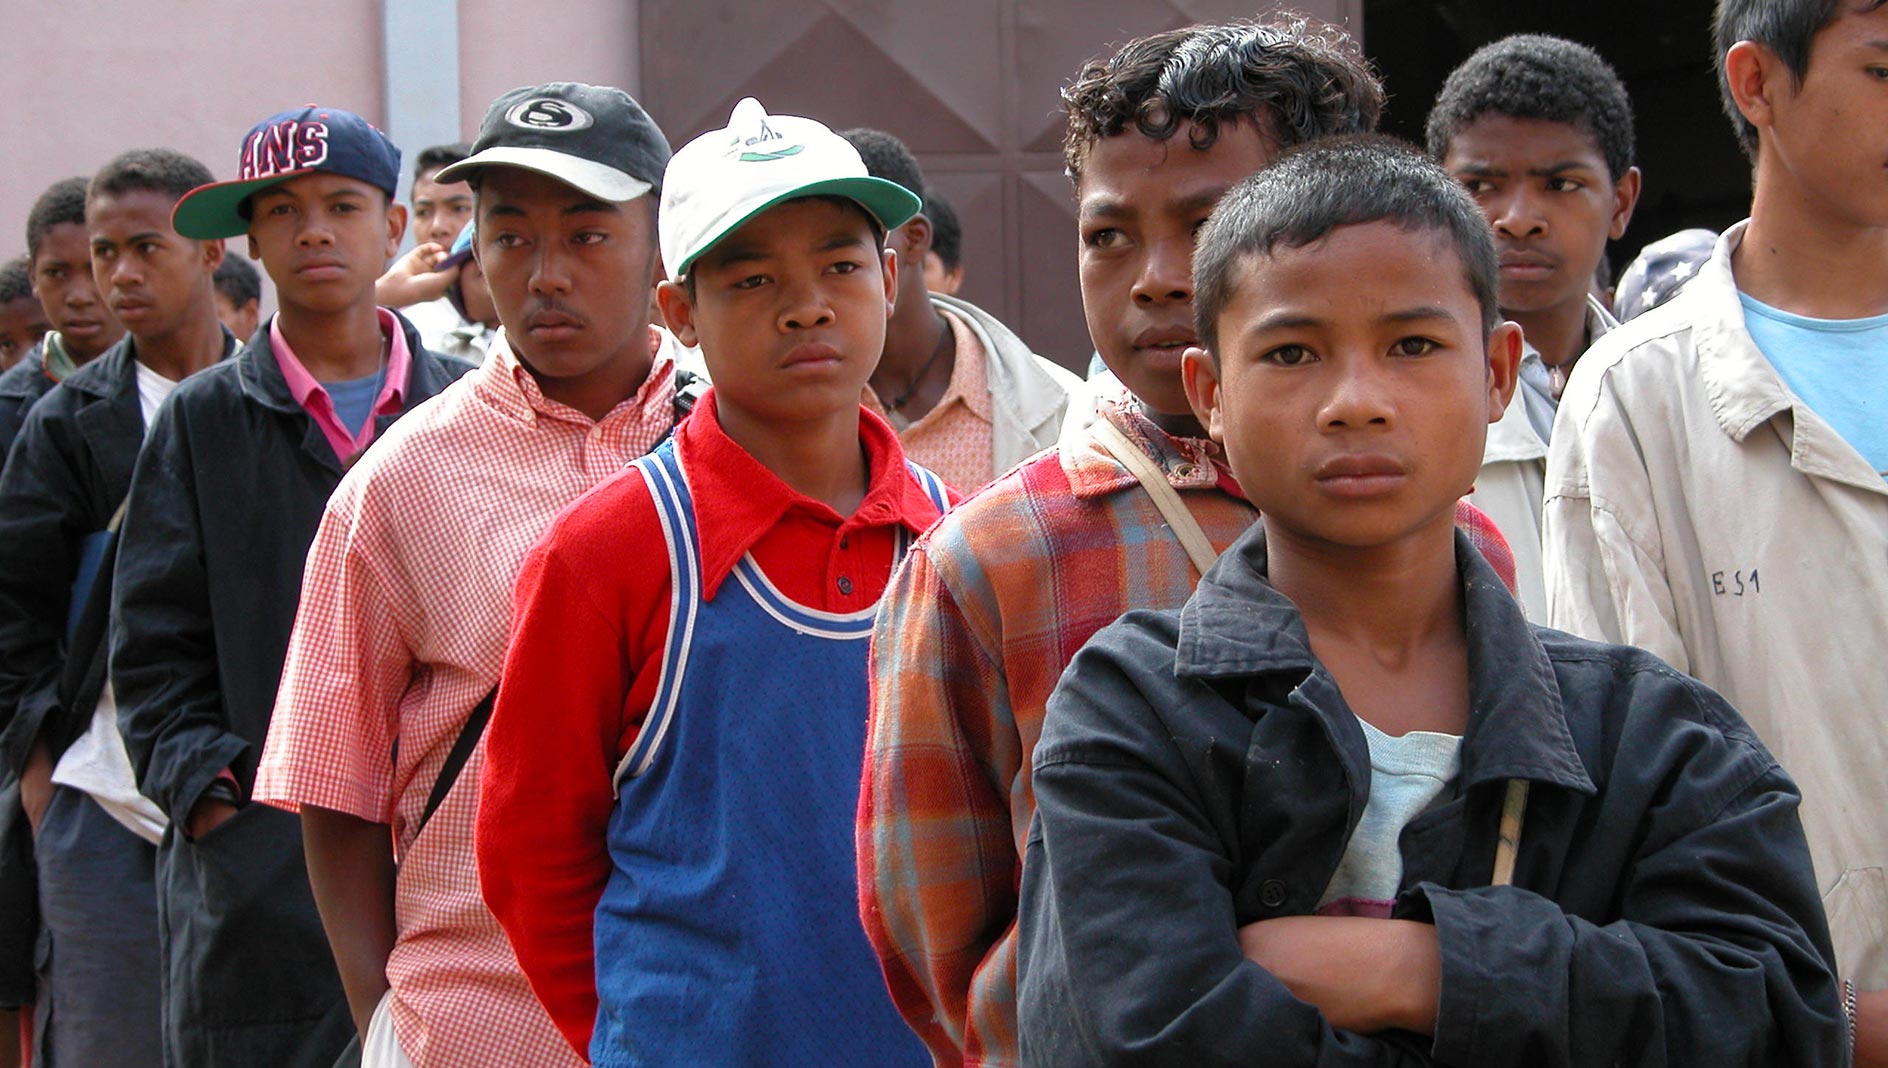 La storia di tre ragazzi del Madagascar